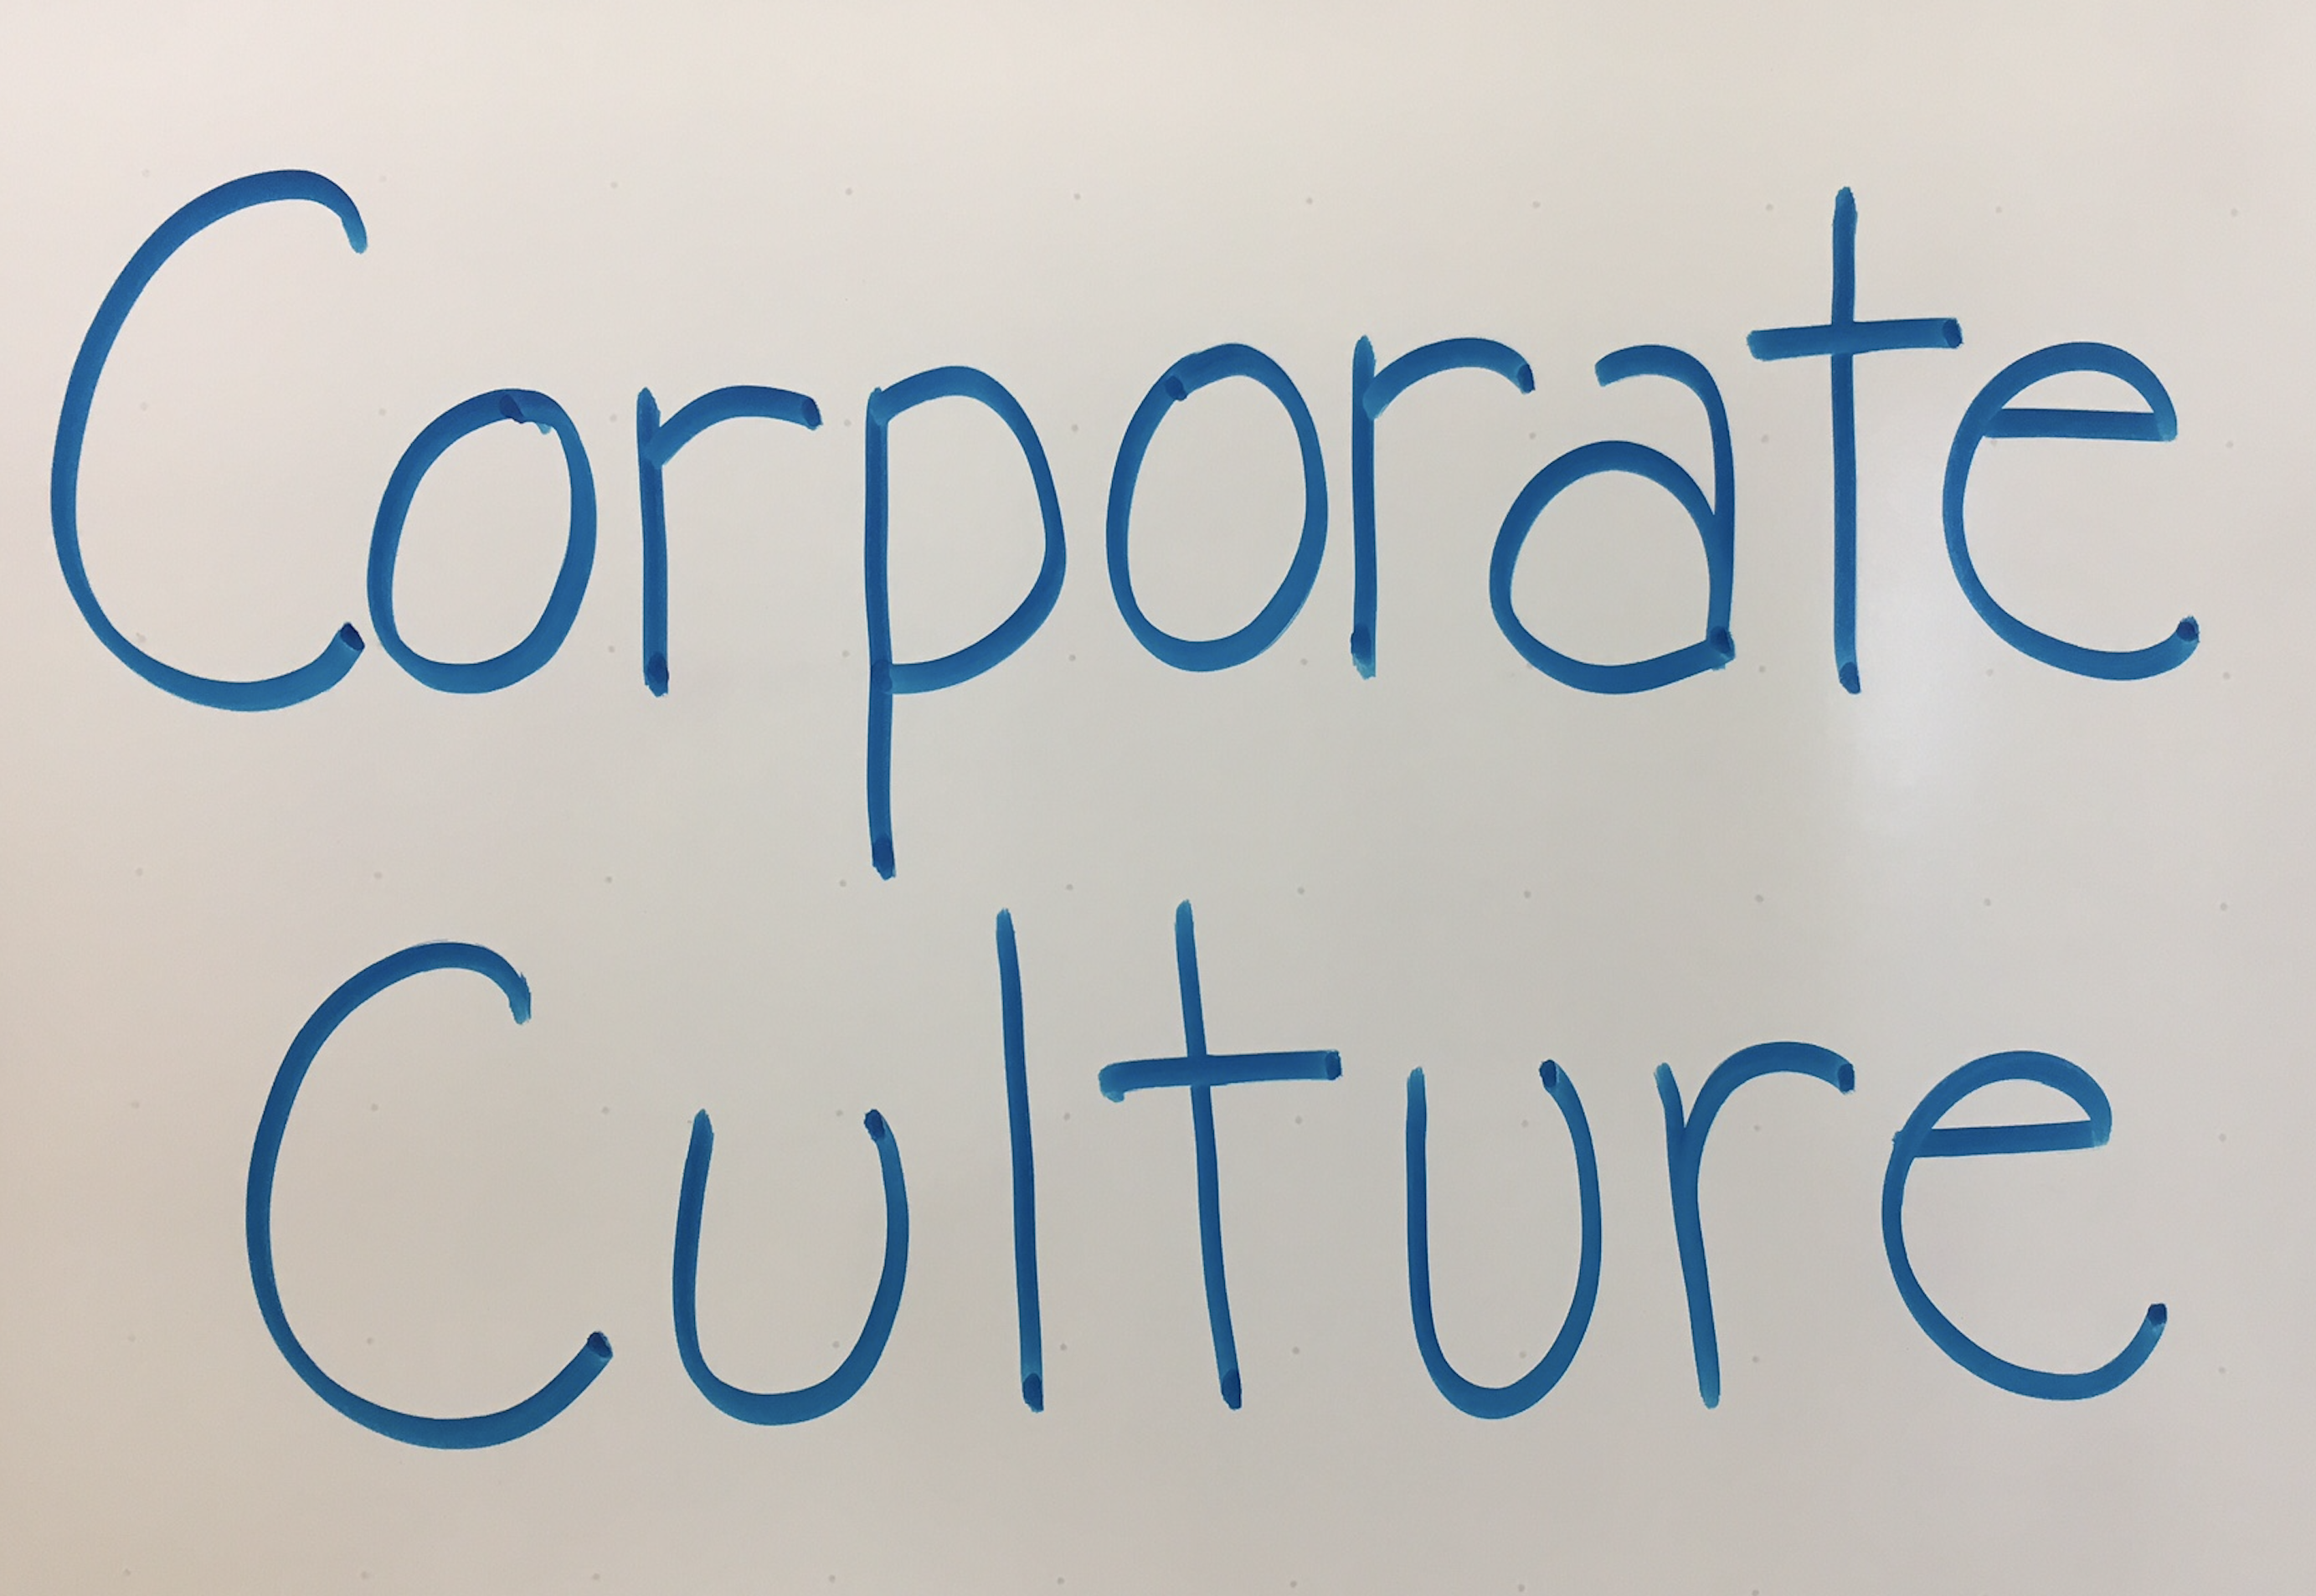 Handwritten words: "Corporate Culture" written on a white board